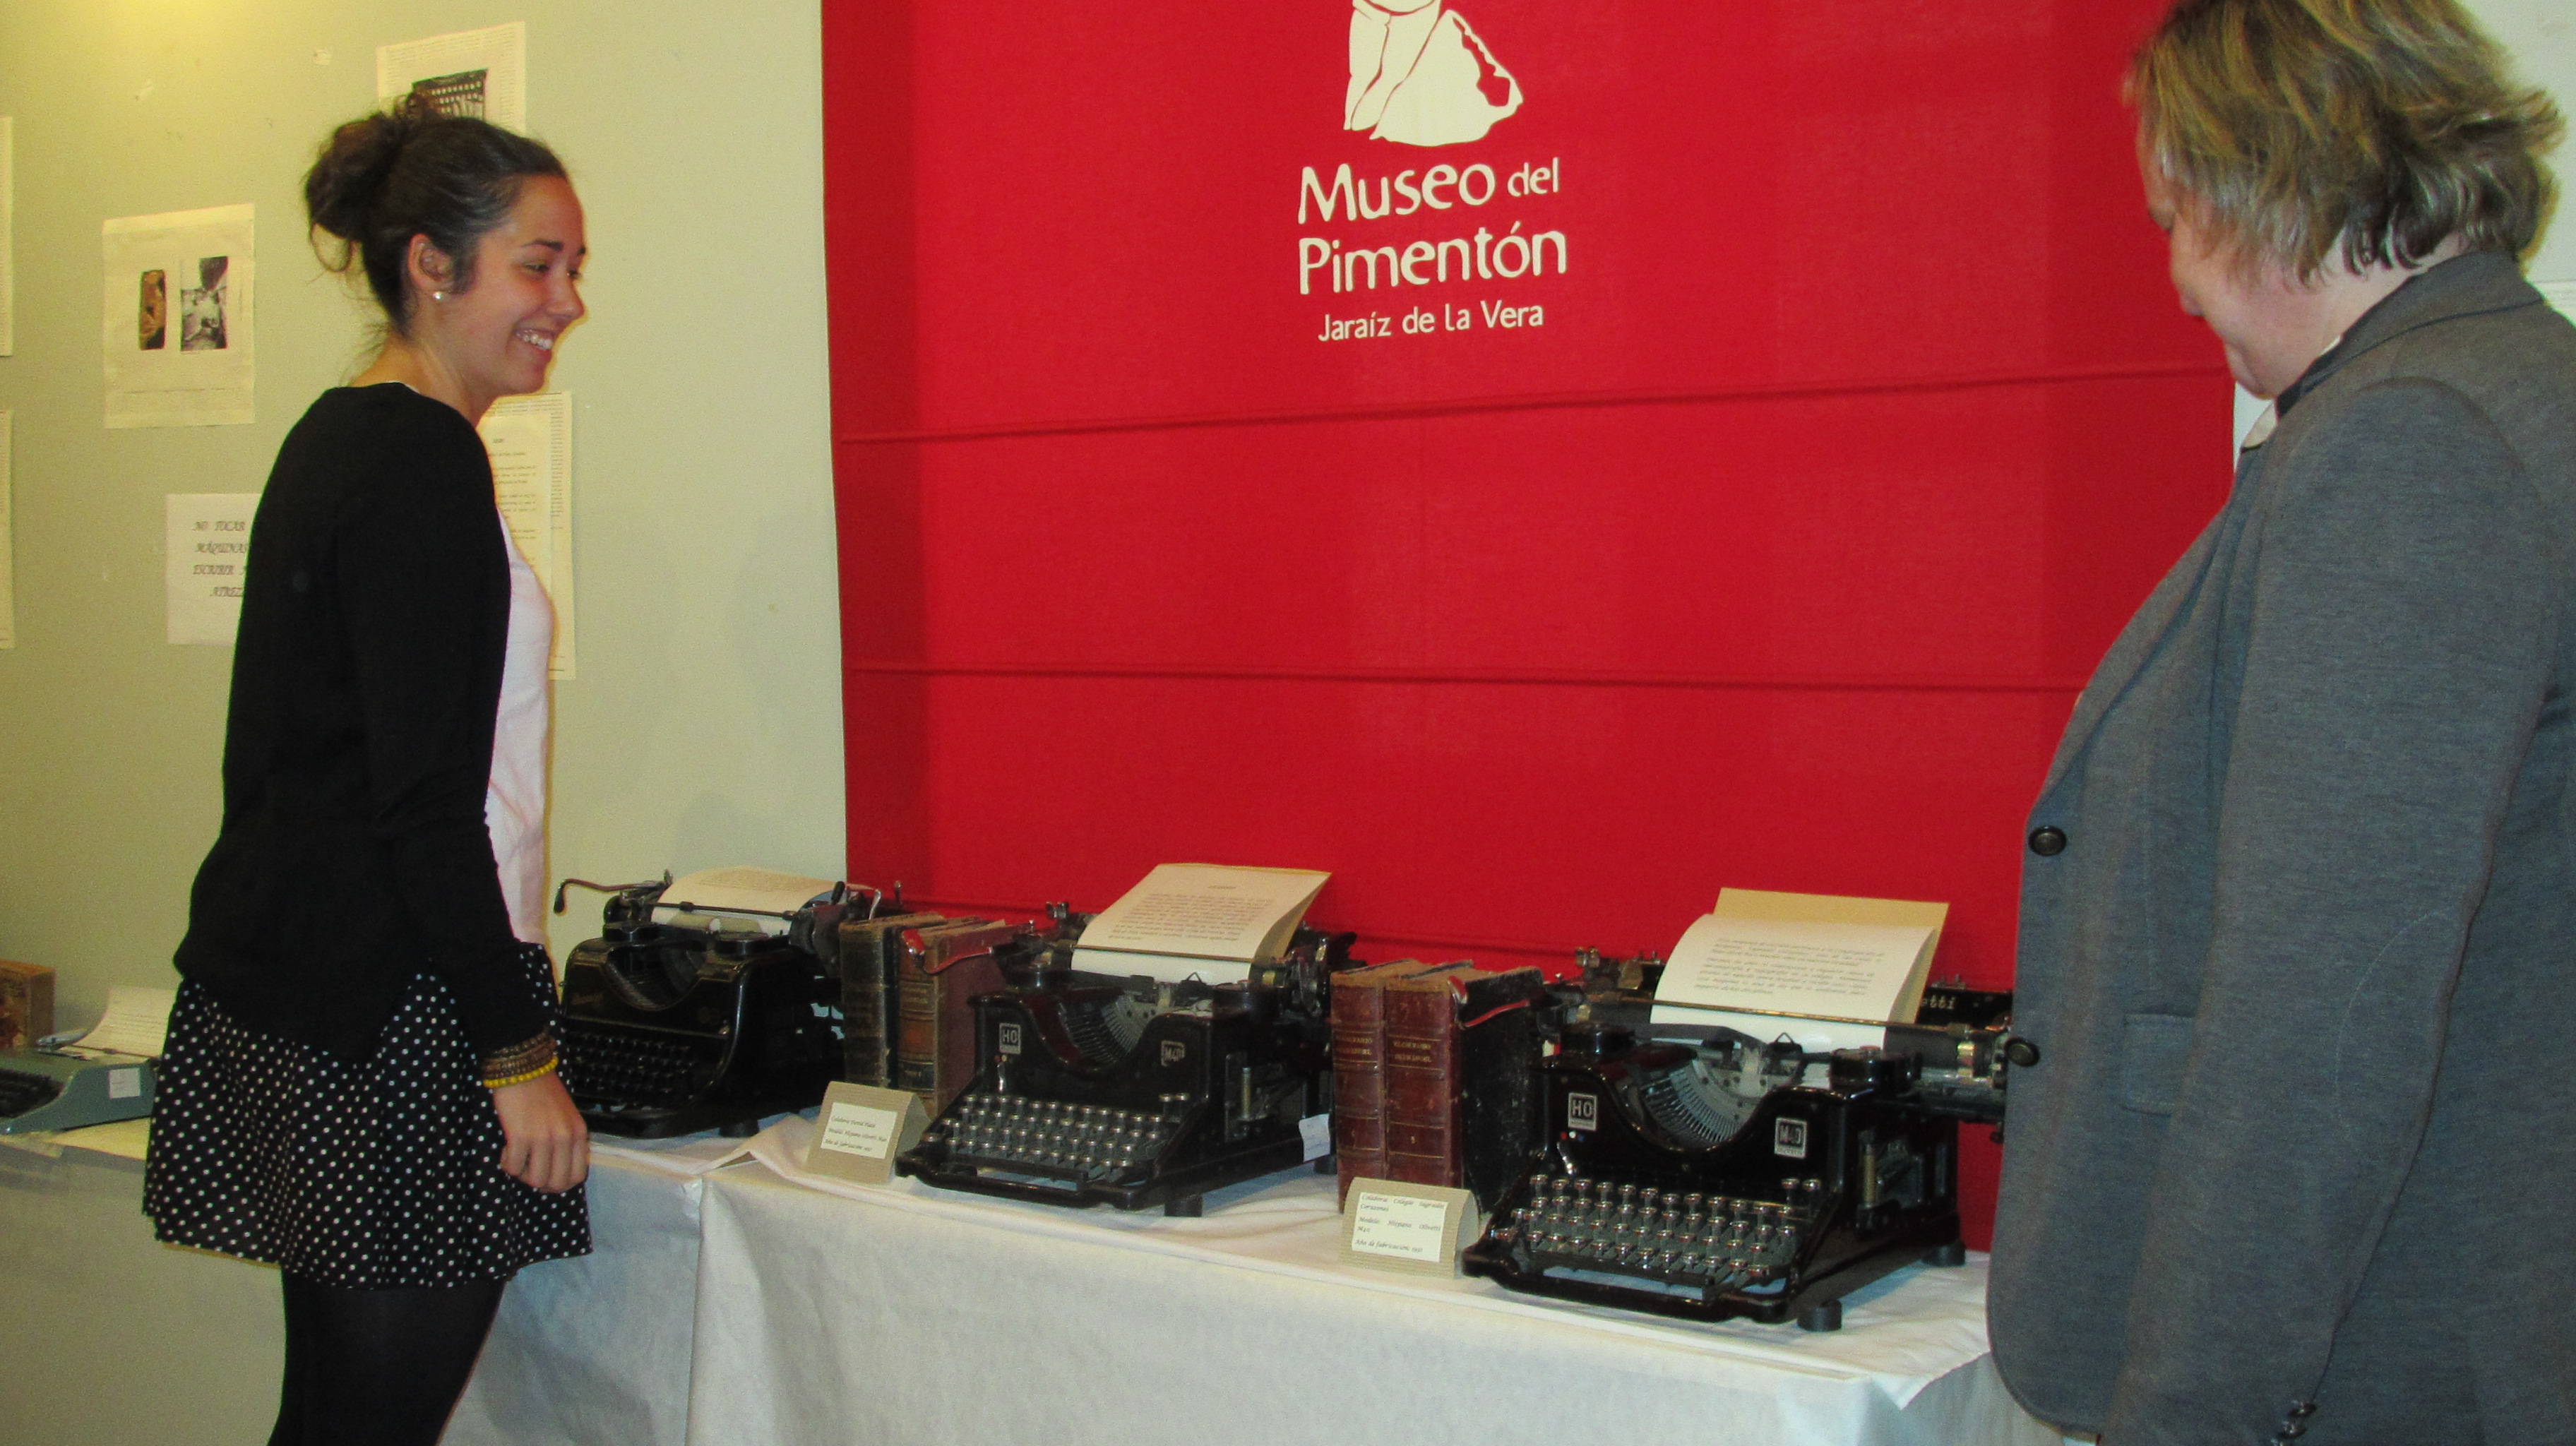 El Museo del Pimentón acoge una exposición de máquinas de escribir antiguas